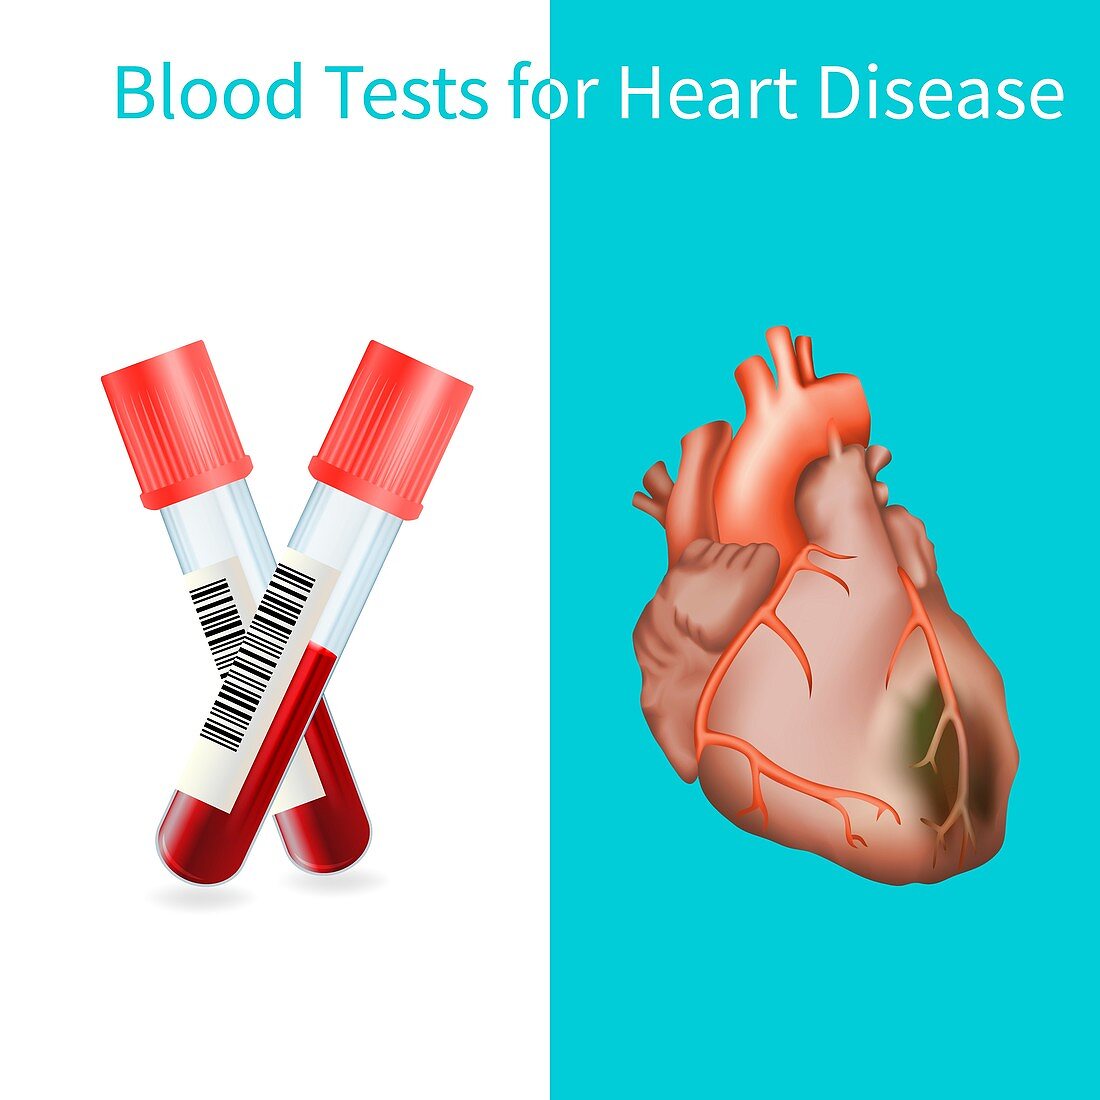 Blood tests for heart disease, illustration